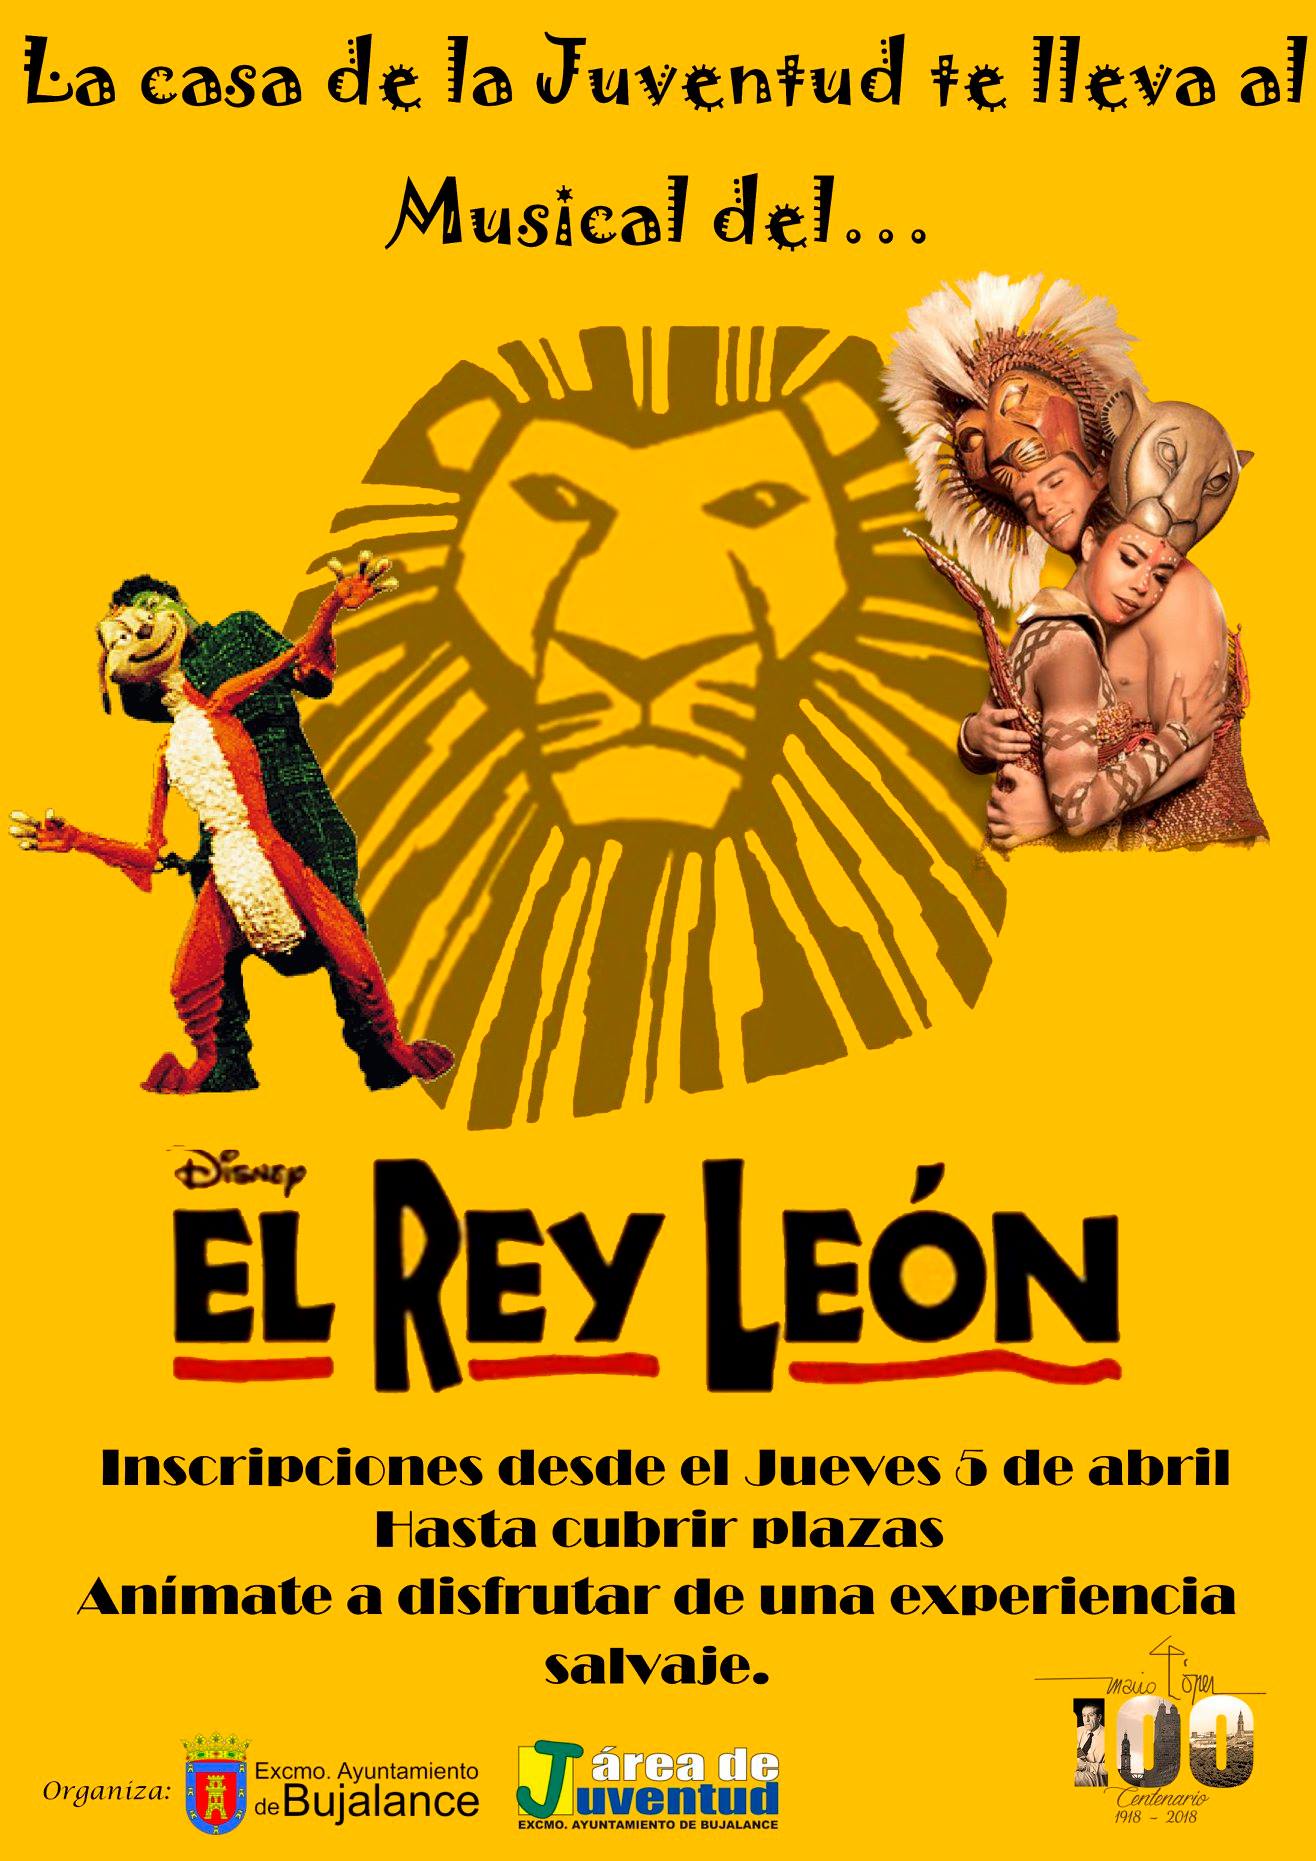 El Rey León - El Musical